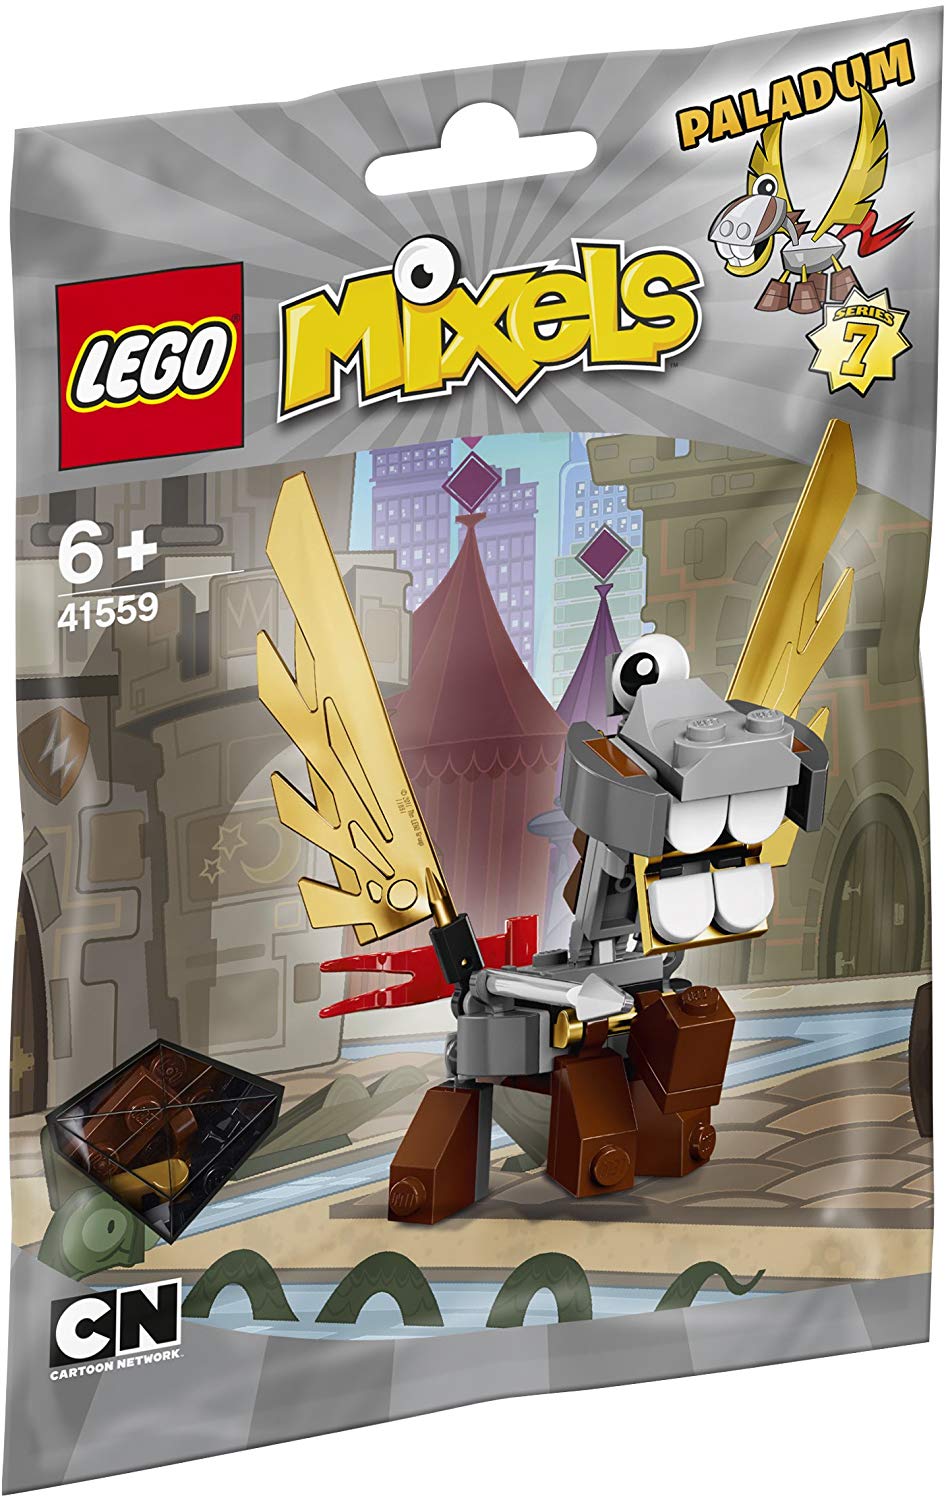 Lego Mixels Paladum 41559